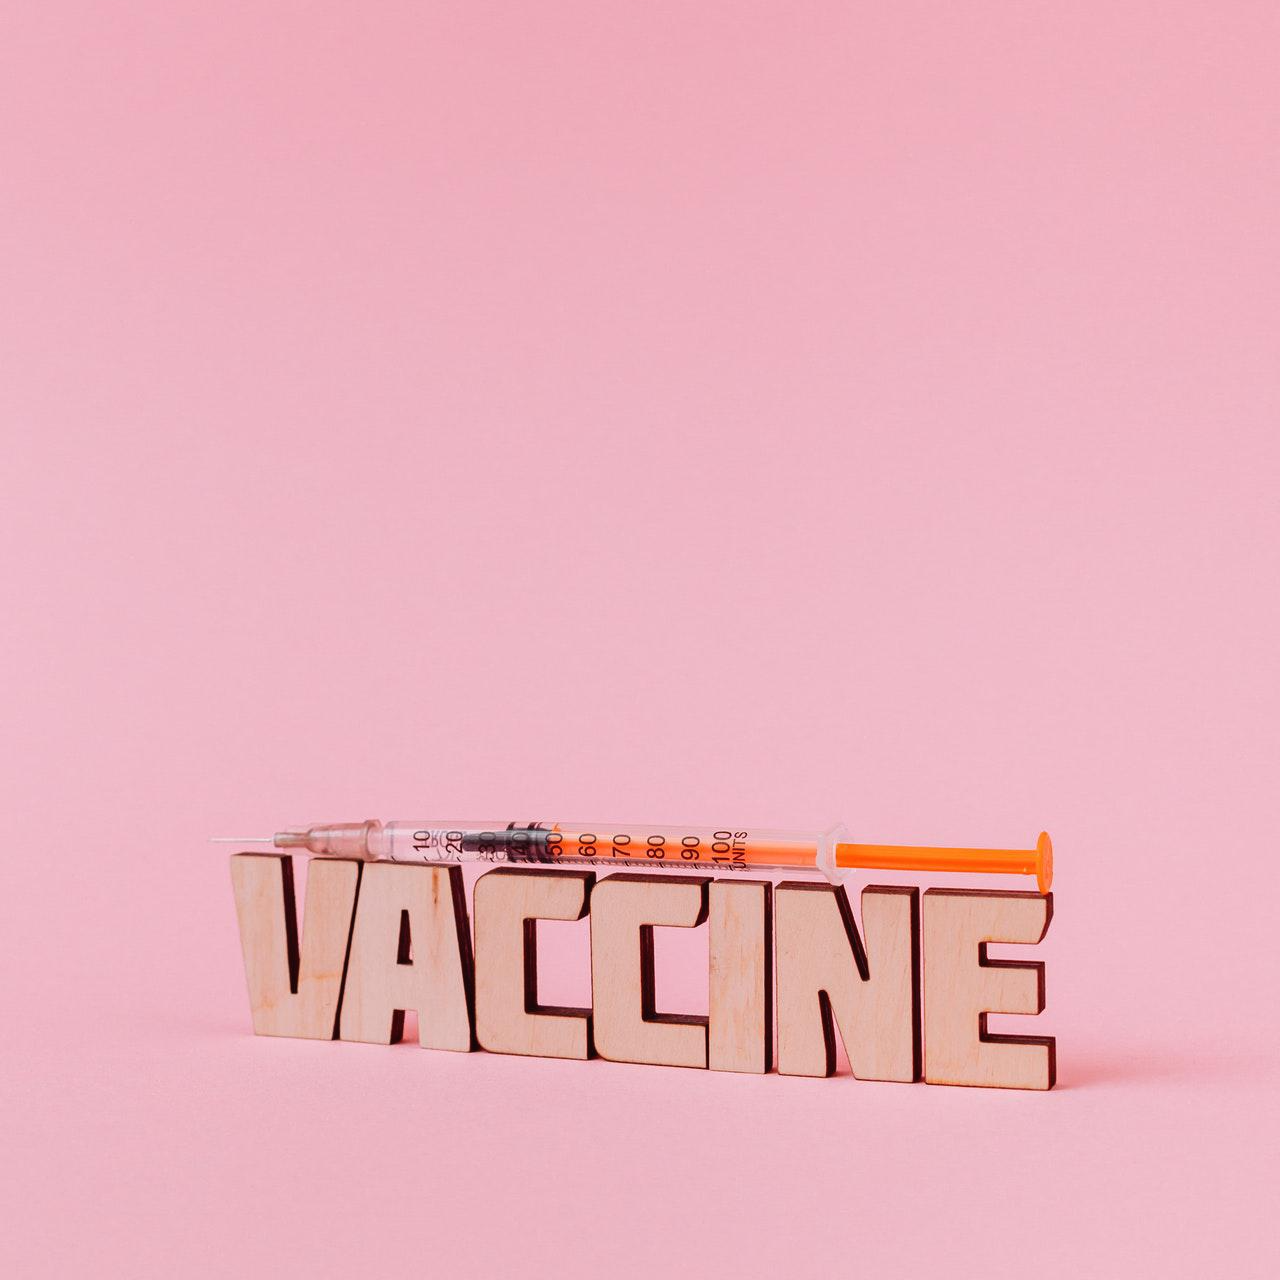 분홍색 배경에 백신이라고 써있고 그 위에 주사기가 올라가 있는 사진 